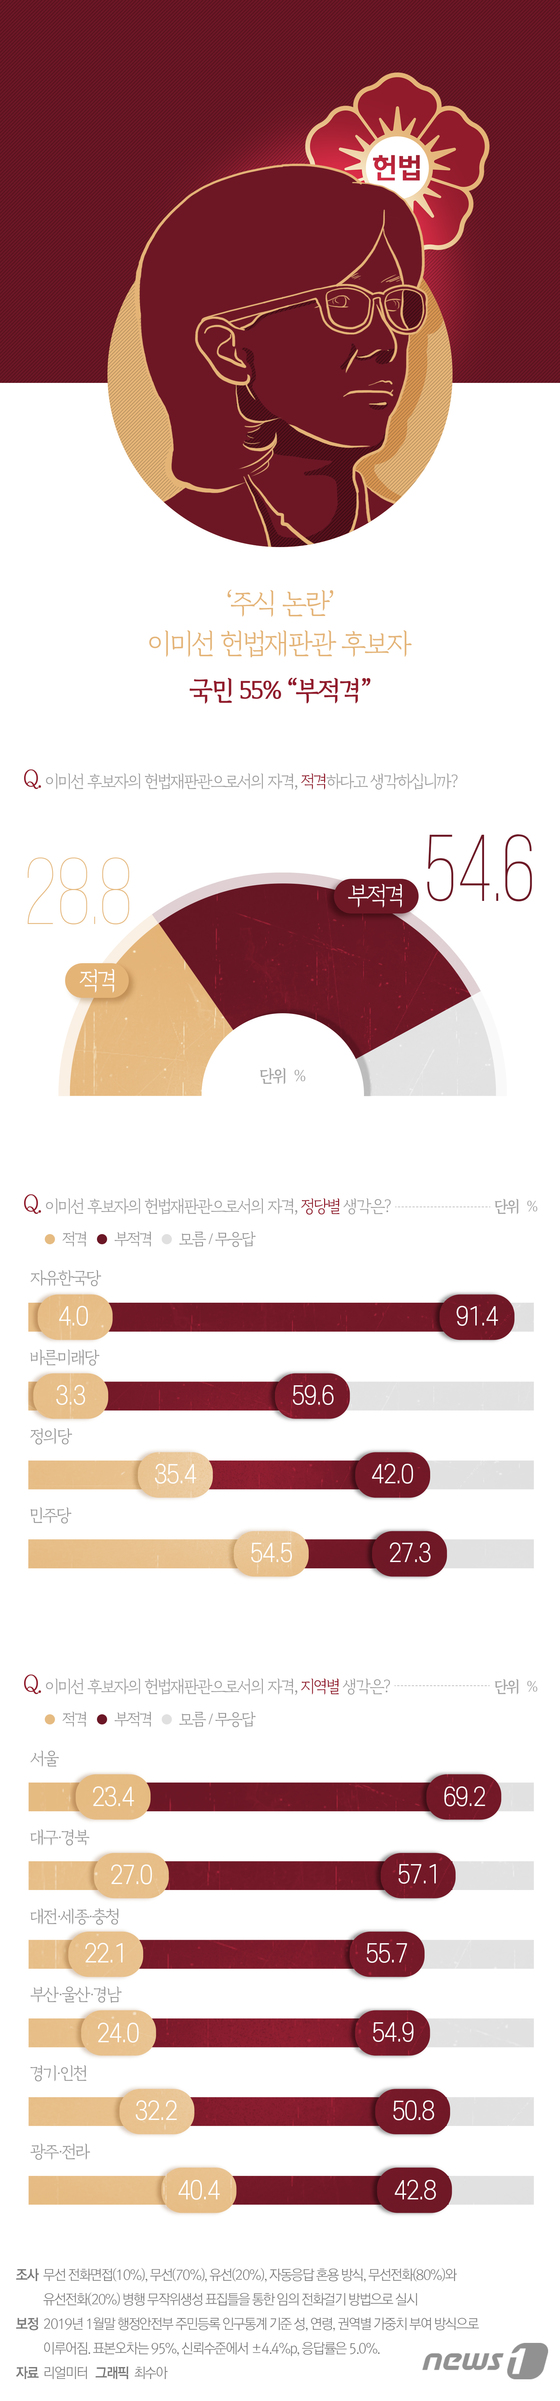 [그래픽뉴스] '주식 논란' 이미선 헌법재판관 후보자, 국민 55% "부적격"